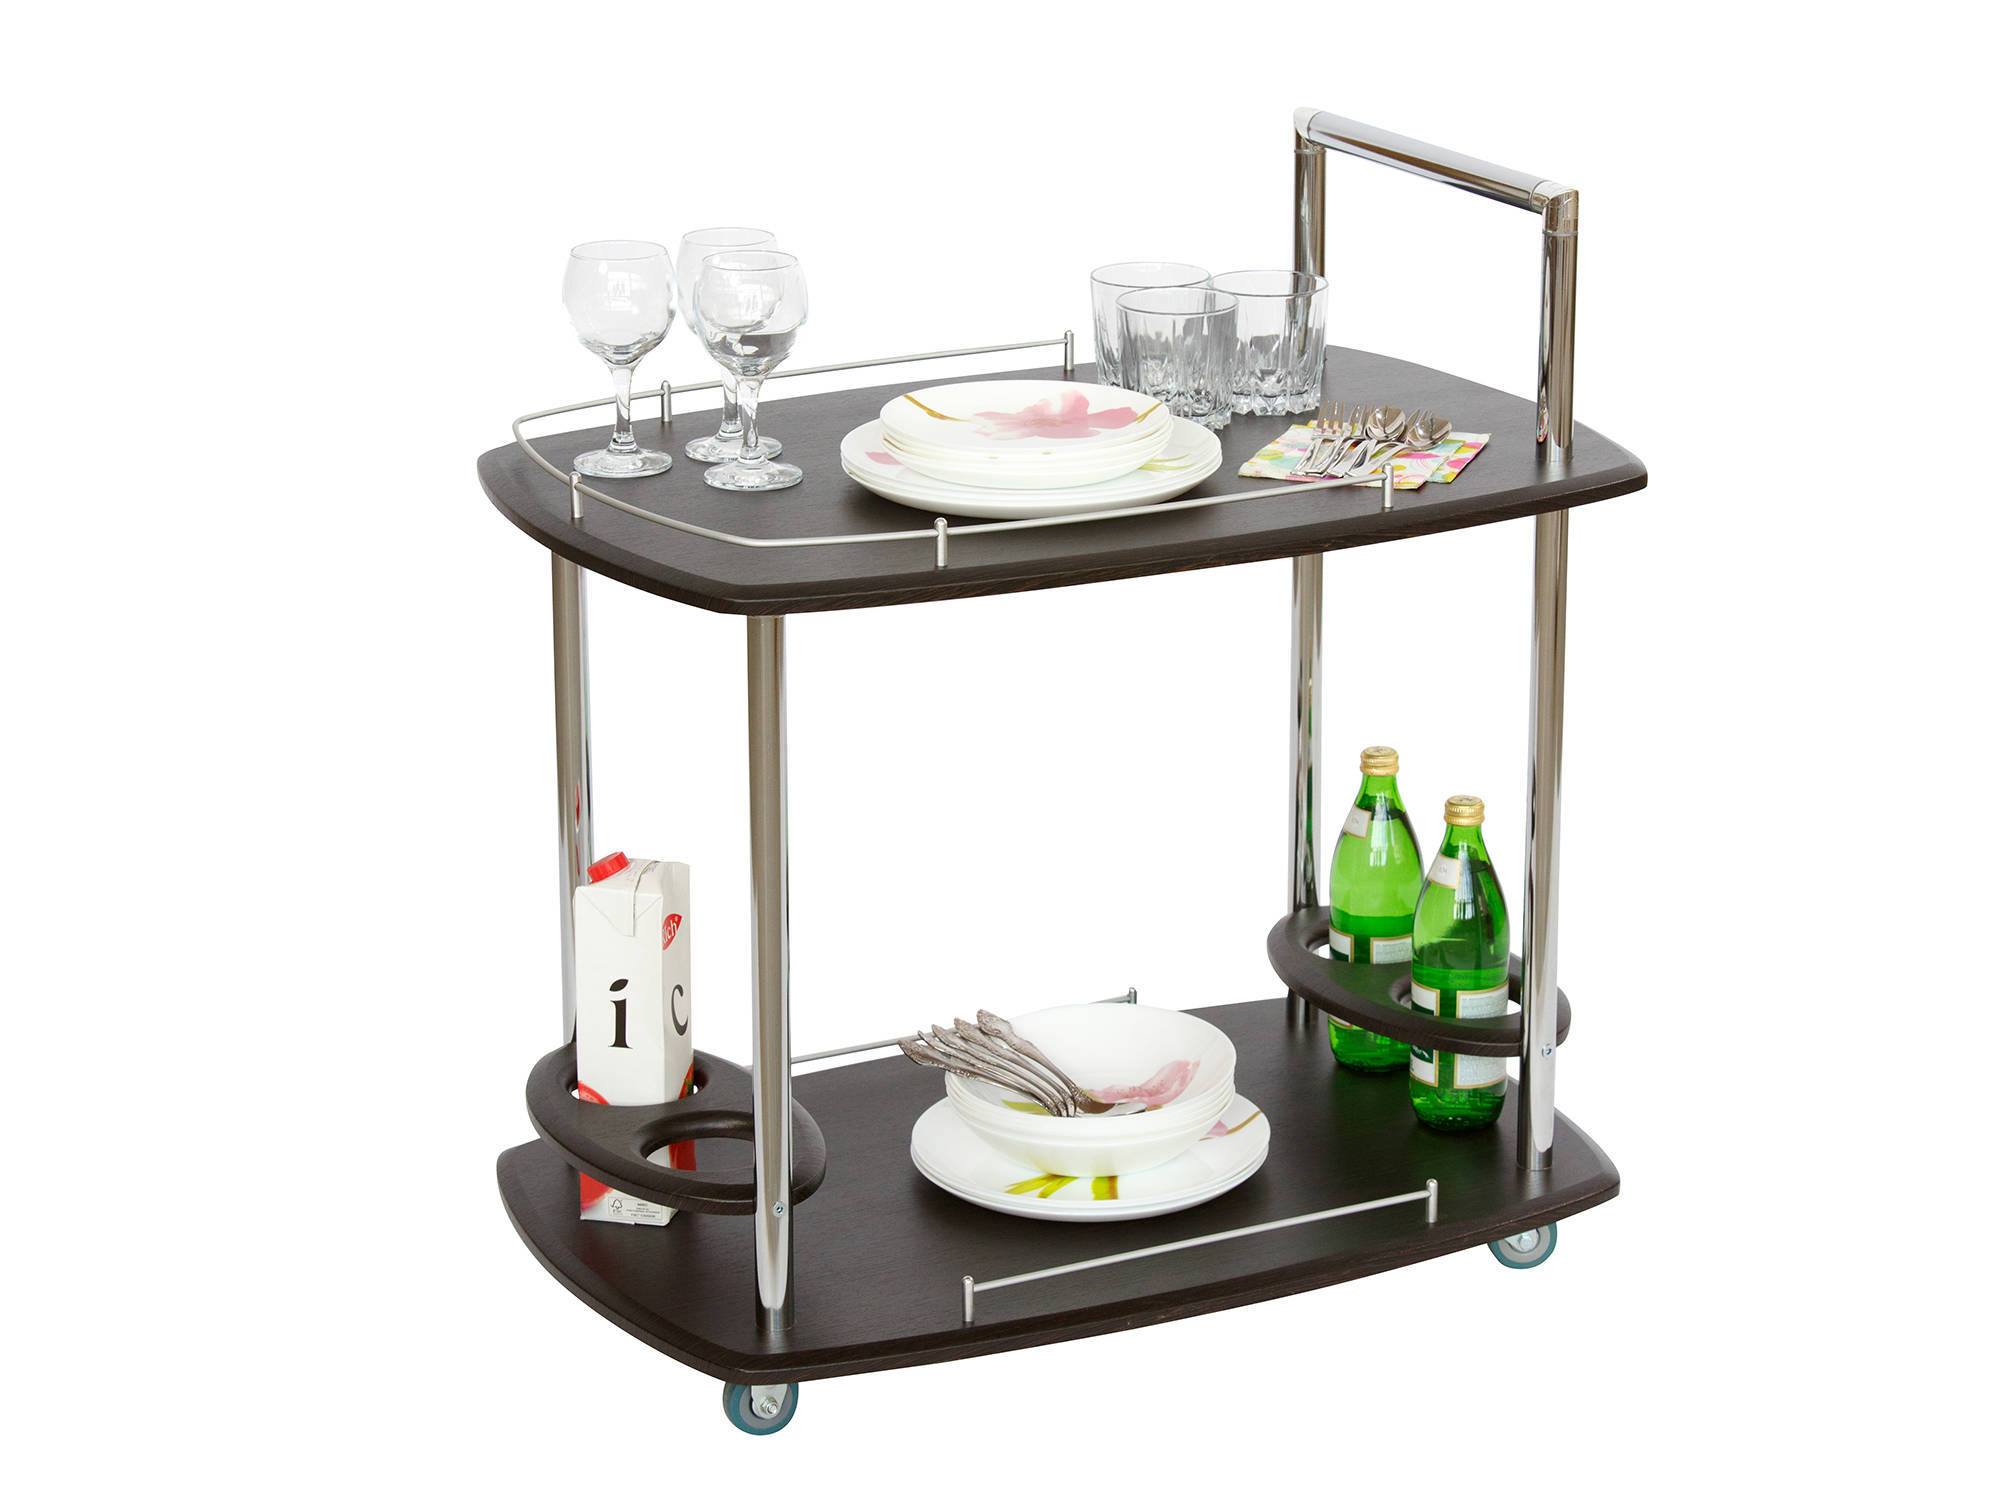 Сервировочный стол Банкет Коричневый темный, Серый, МДФ, Металл стол сервировочный бармен коричневый темный мдф металл